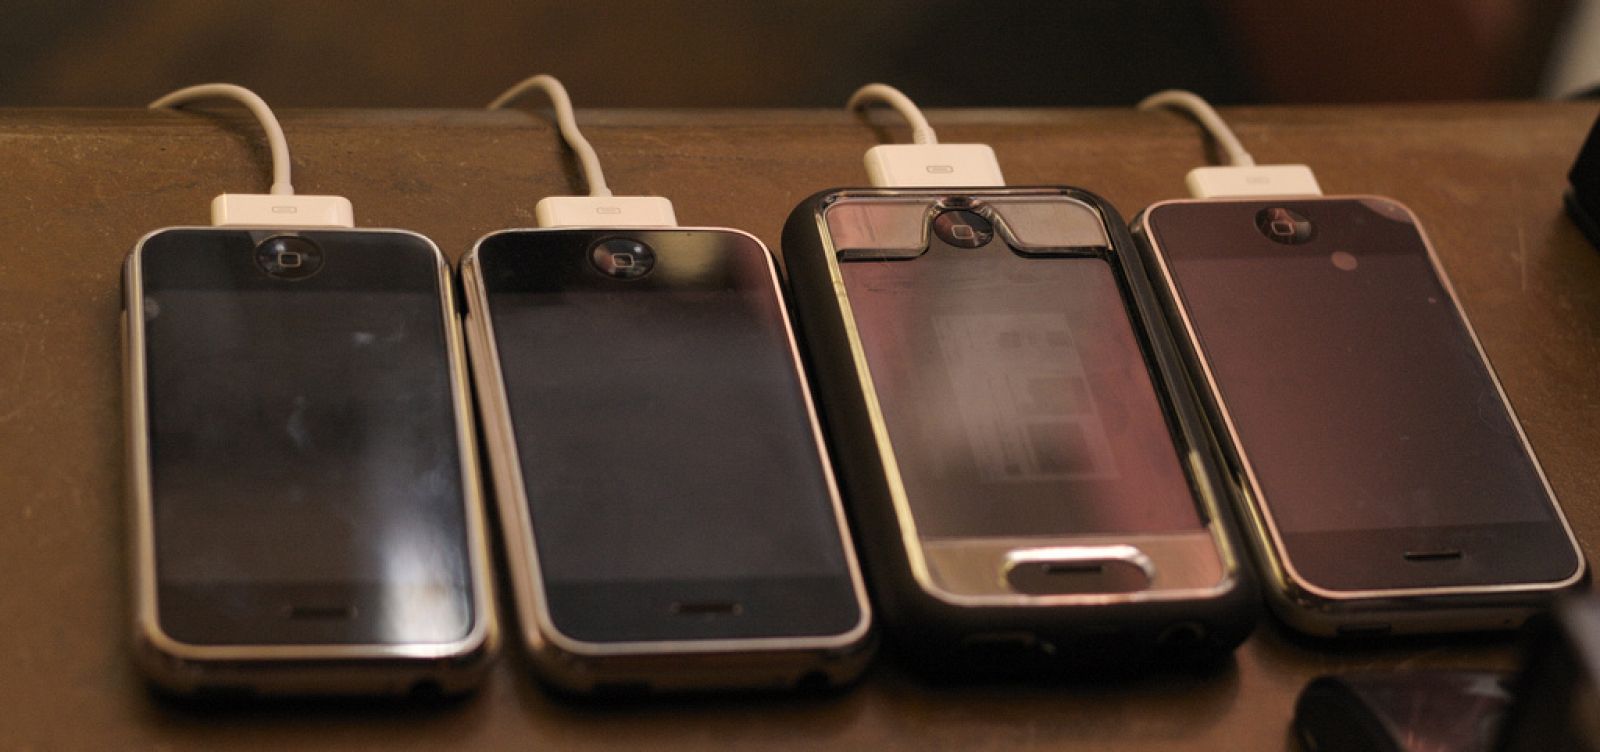 Varios iPhones en su momento de recarga